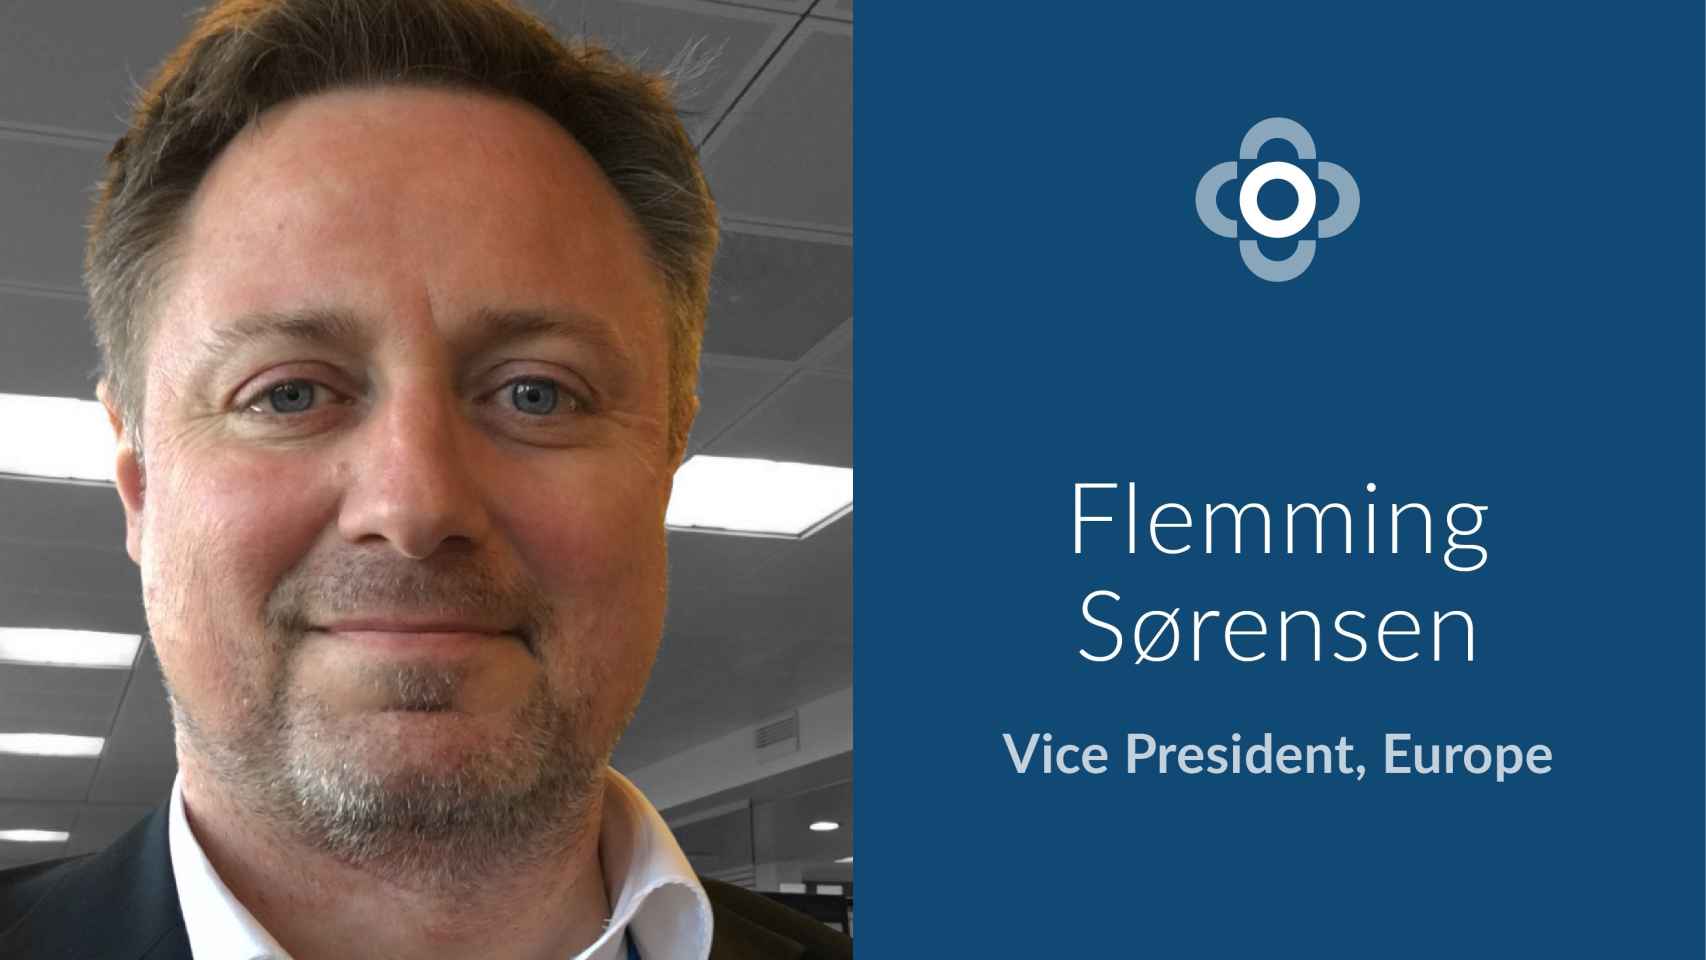 Primer Vicepresidente de Europa de LevelTen, Flemming  Sørensen